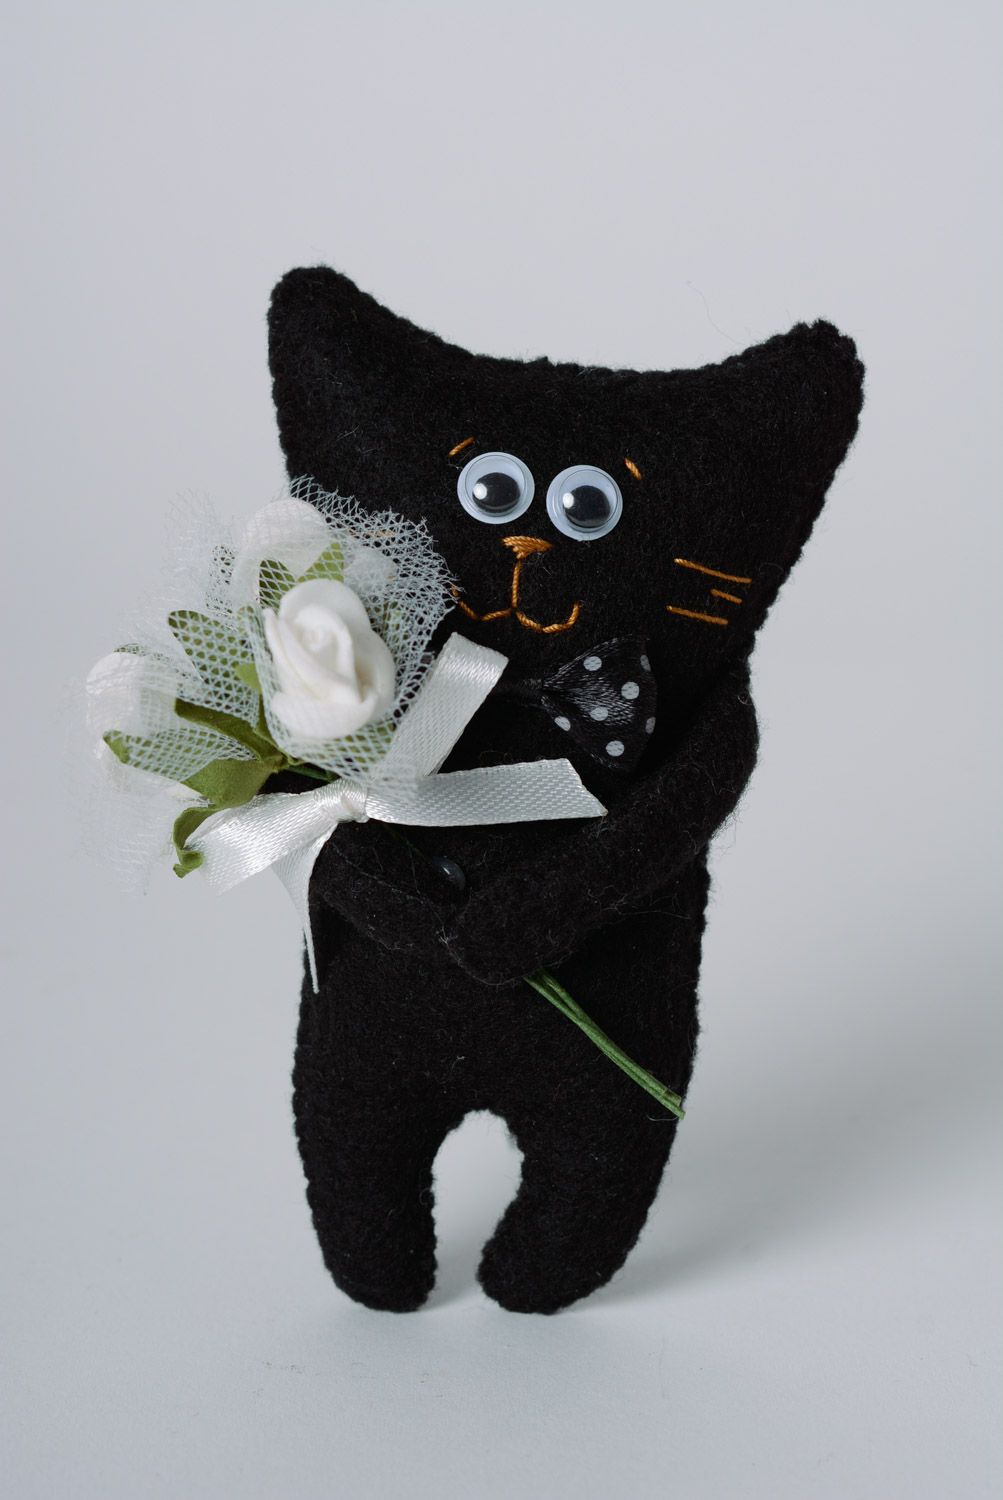 Мягкий черный котик игрушка ручной работы из фетра маленькая забавная красивая фото 1